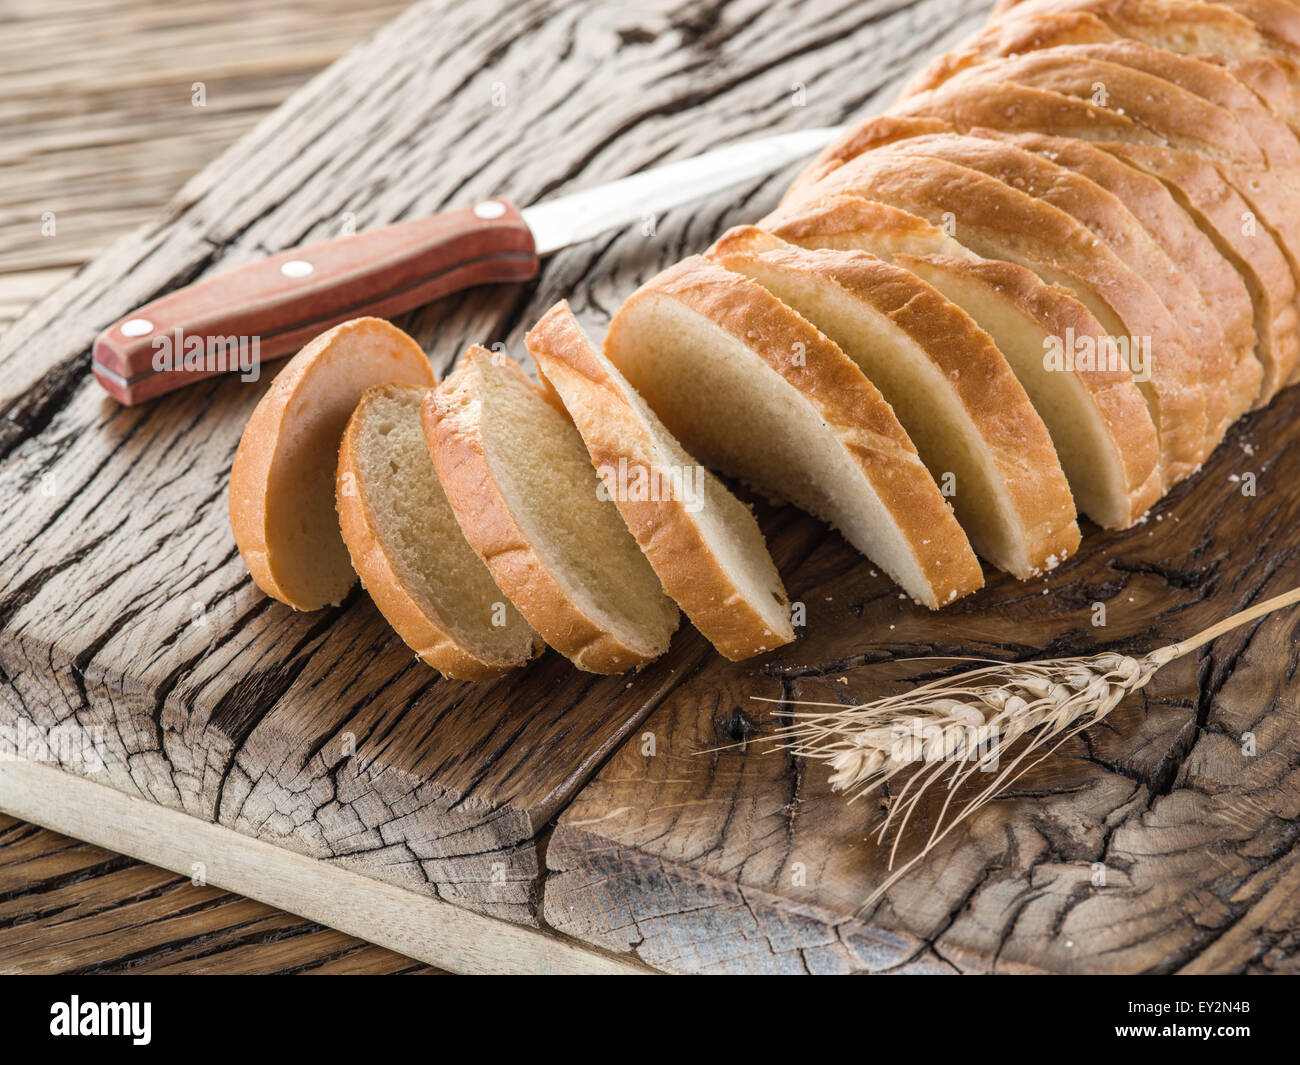 Rodajas de pan blanco sobre la plancha de madera vieja. Foto de stock